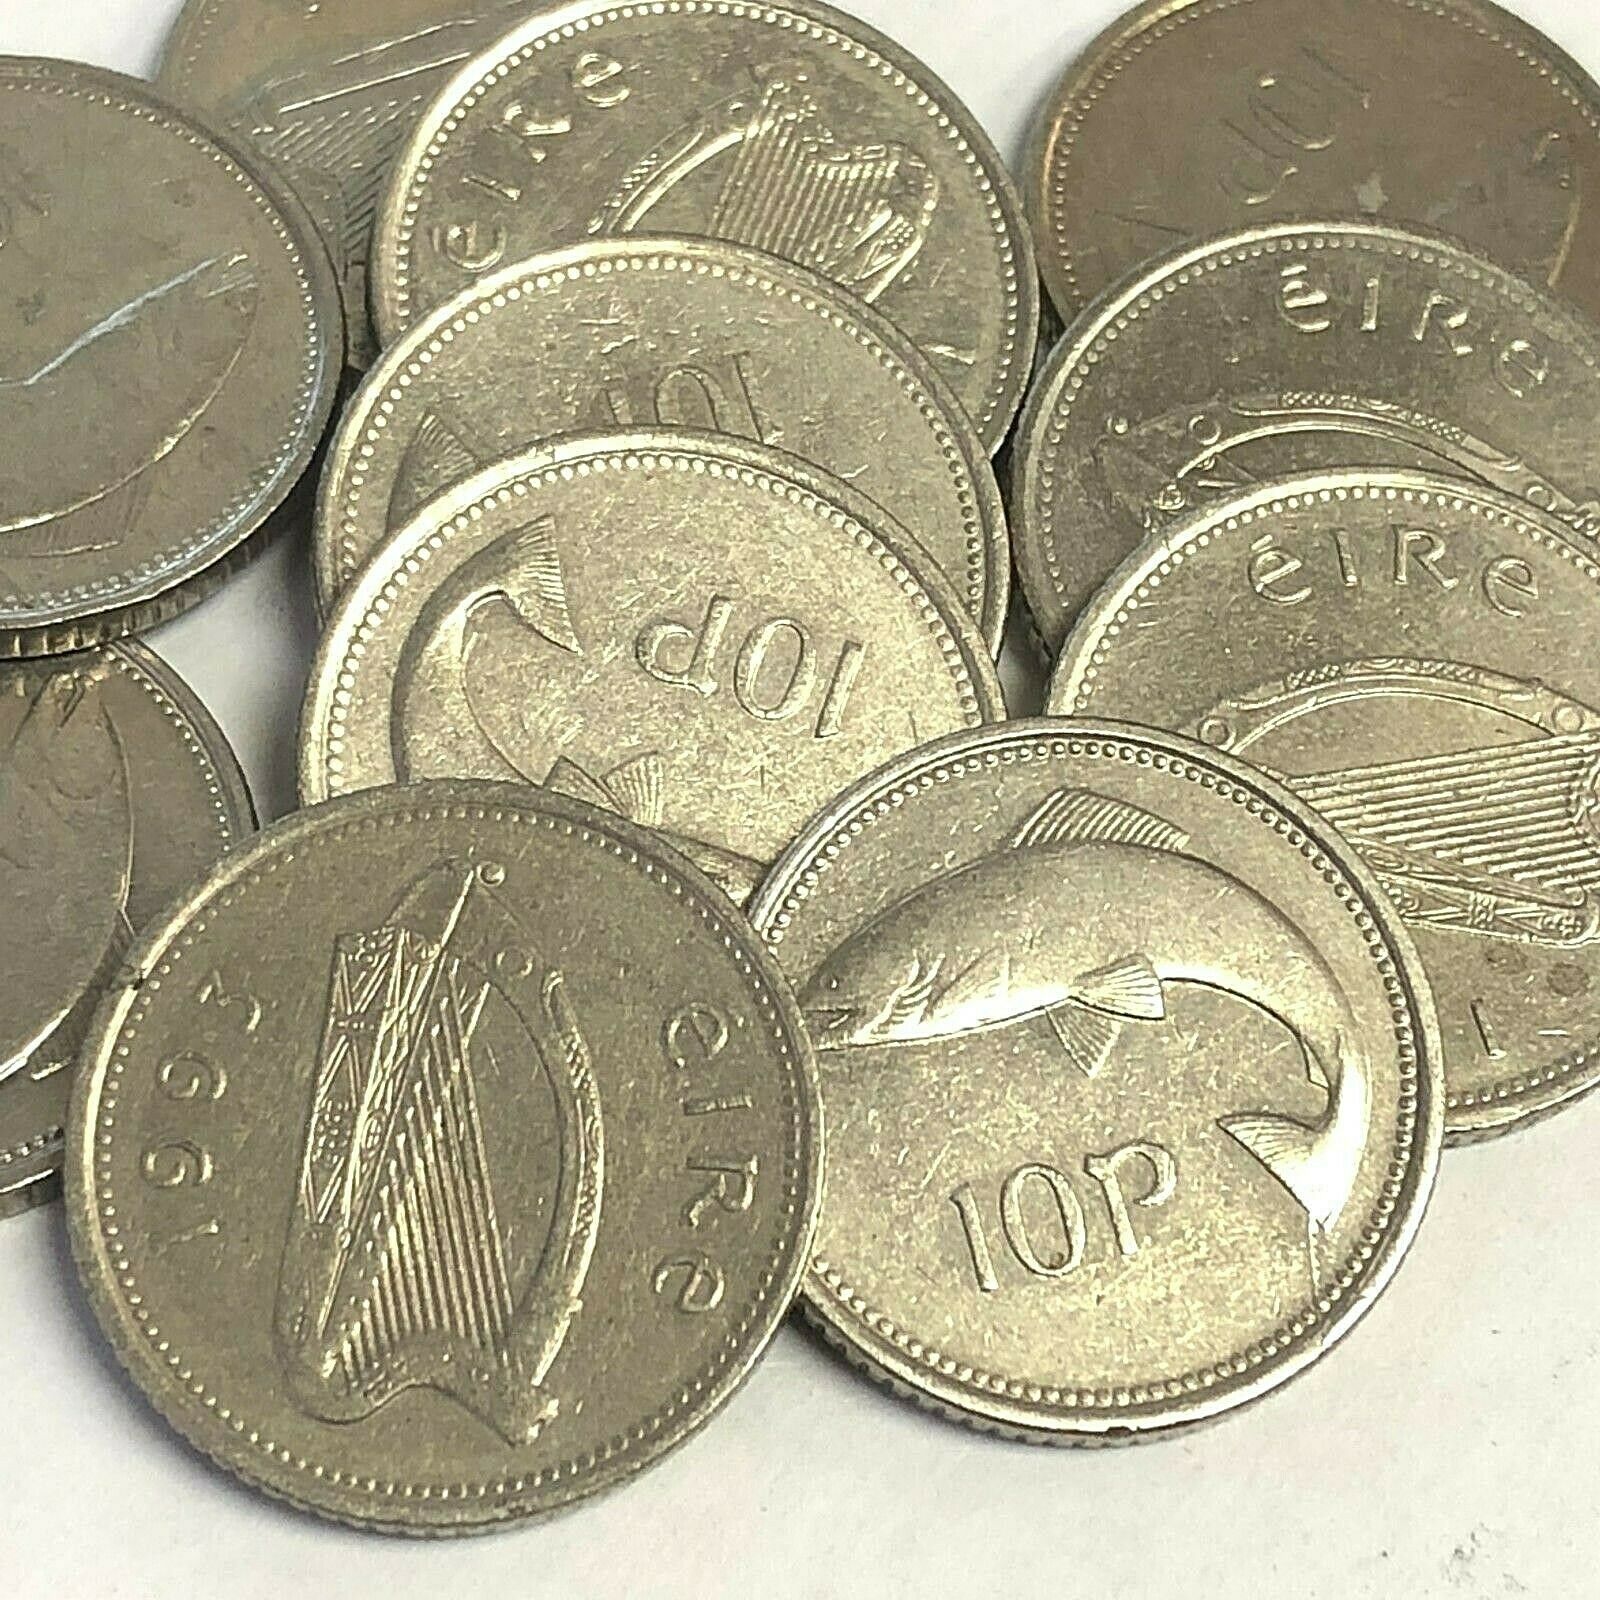 Ireland 10 Pence Salmon - Irish Fish Coin (1993 - 2000 Type), 22mm, Km#29